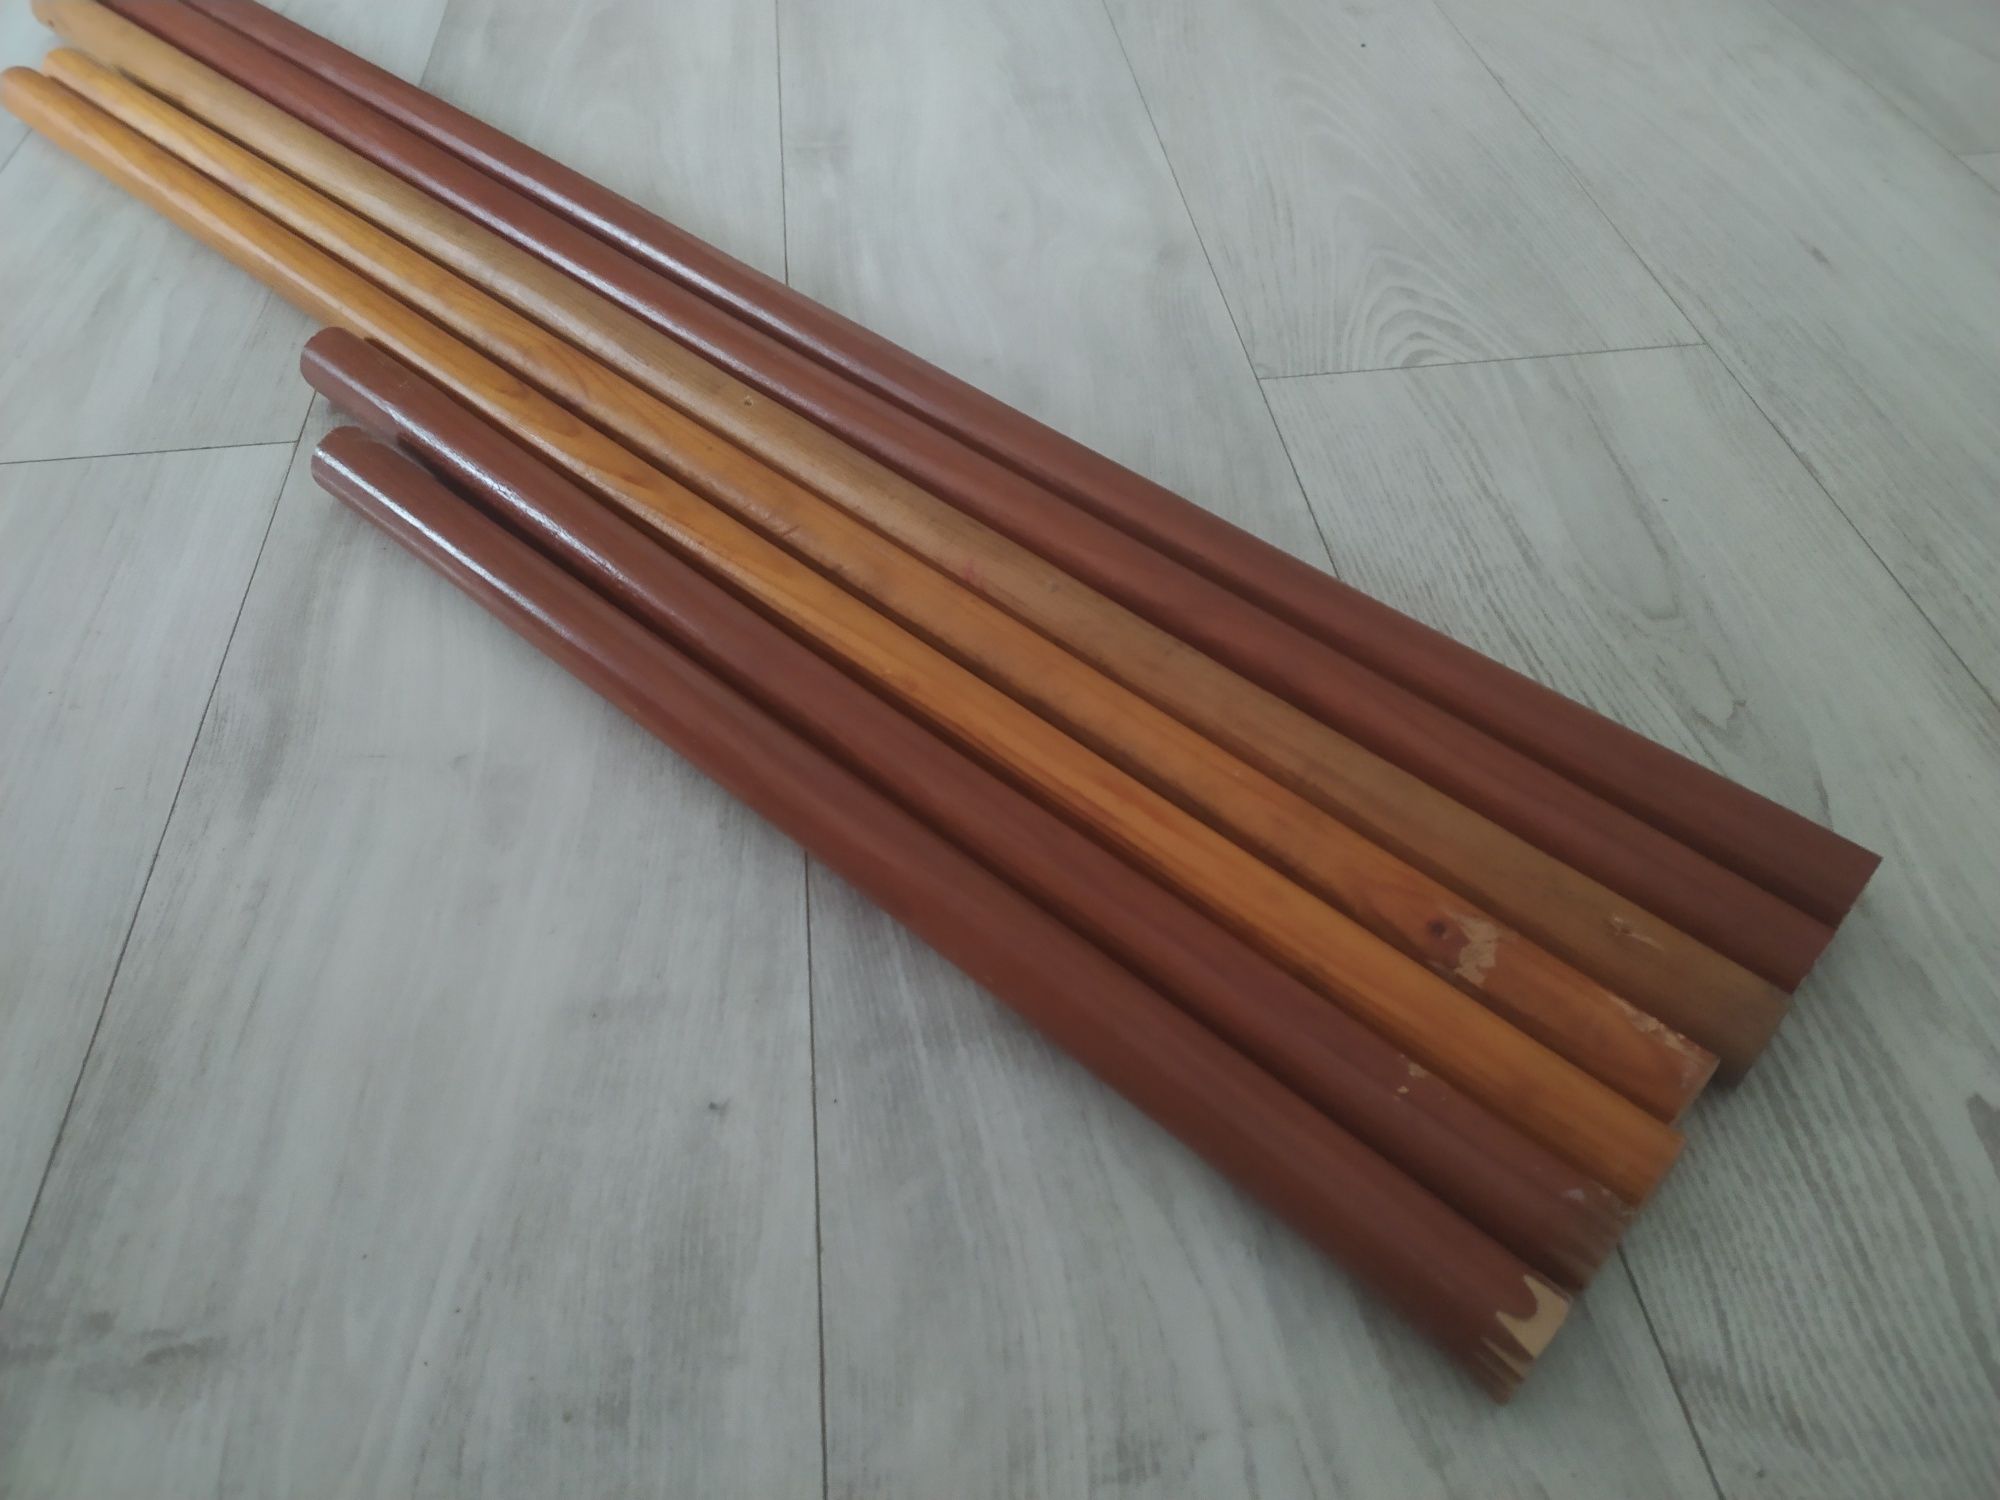 Drążki drewniane fi 2.5 cm- 7 szt- zestaw